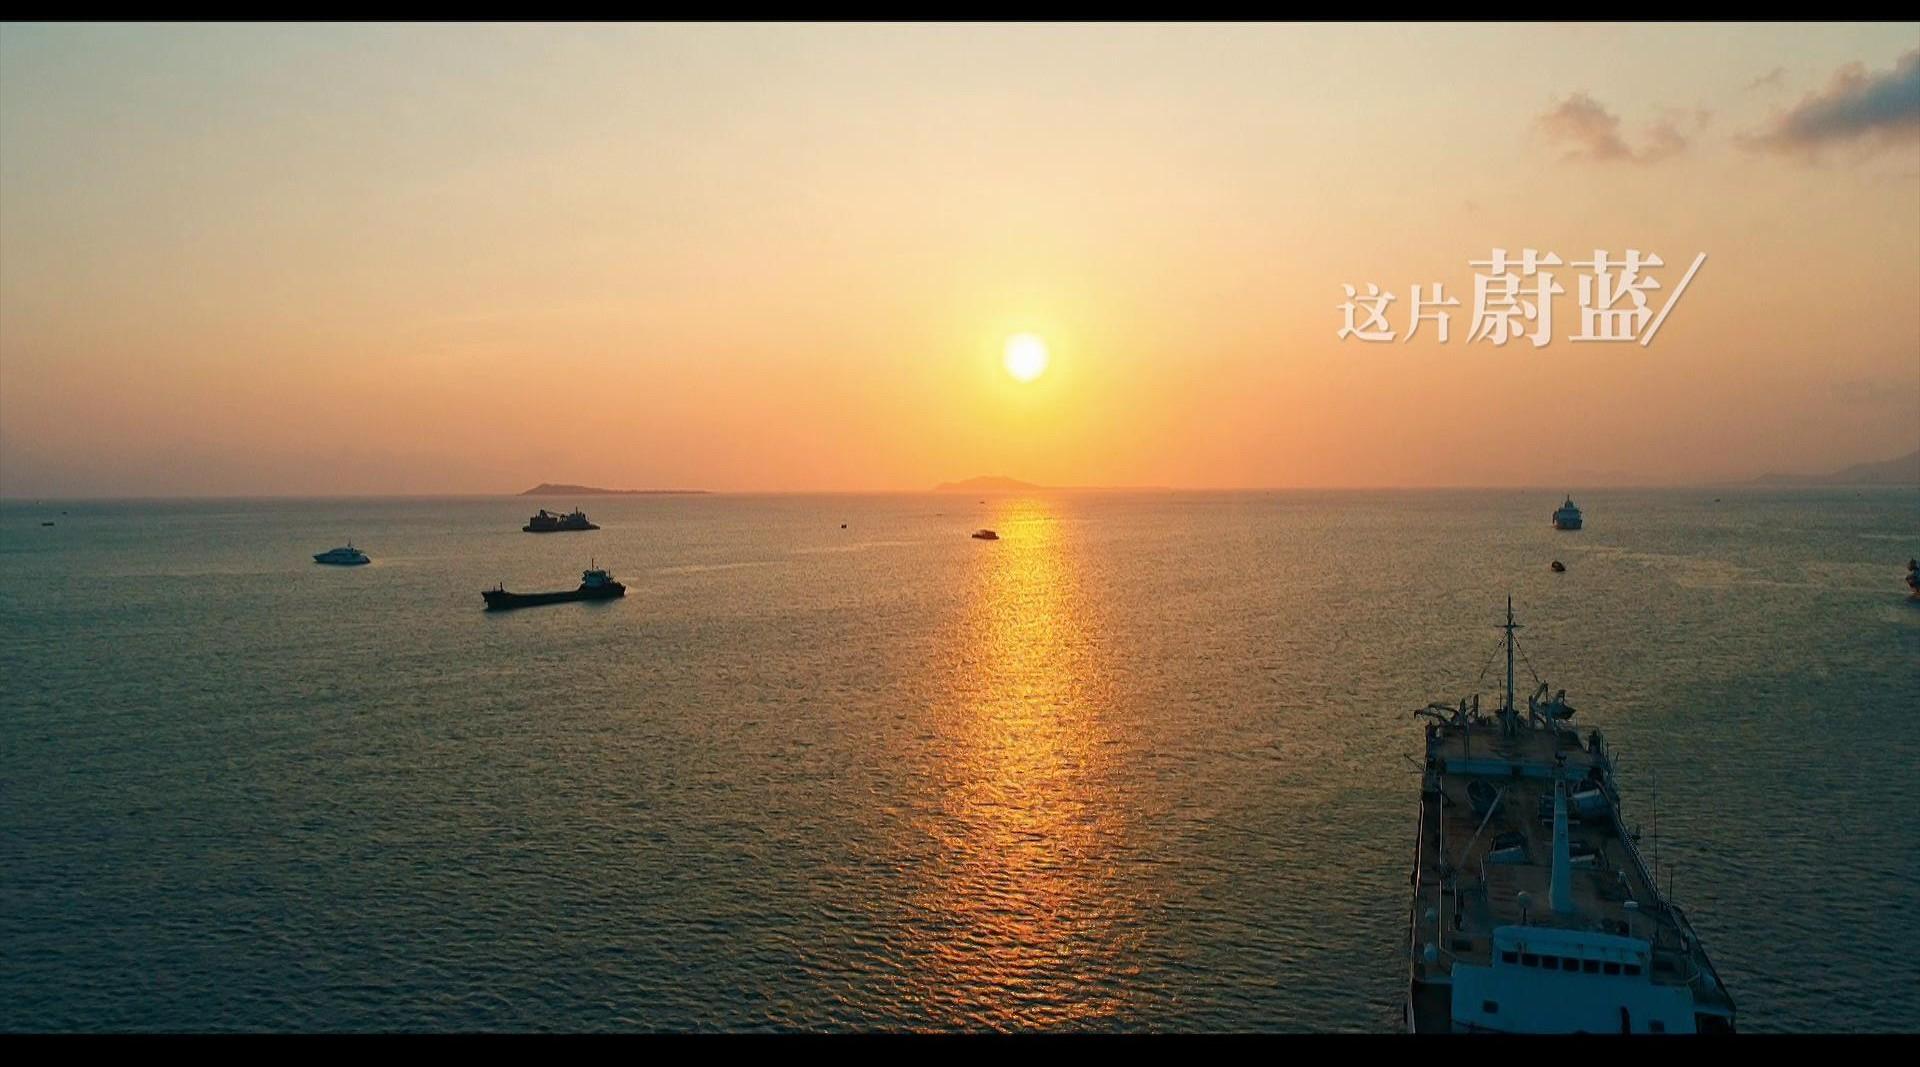 海南建省三十周年形象宣传片—《感谢付出赋予时间的意义》